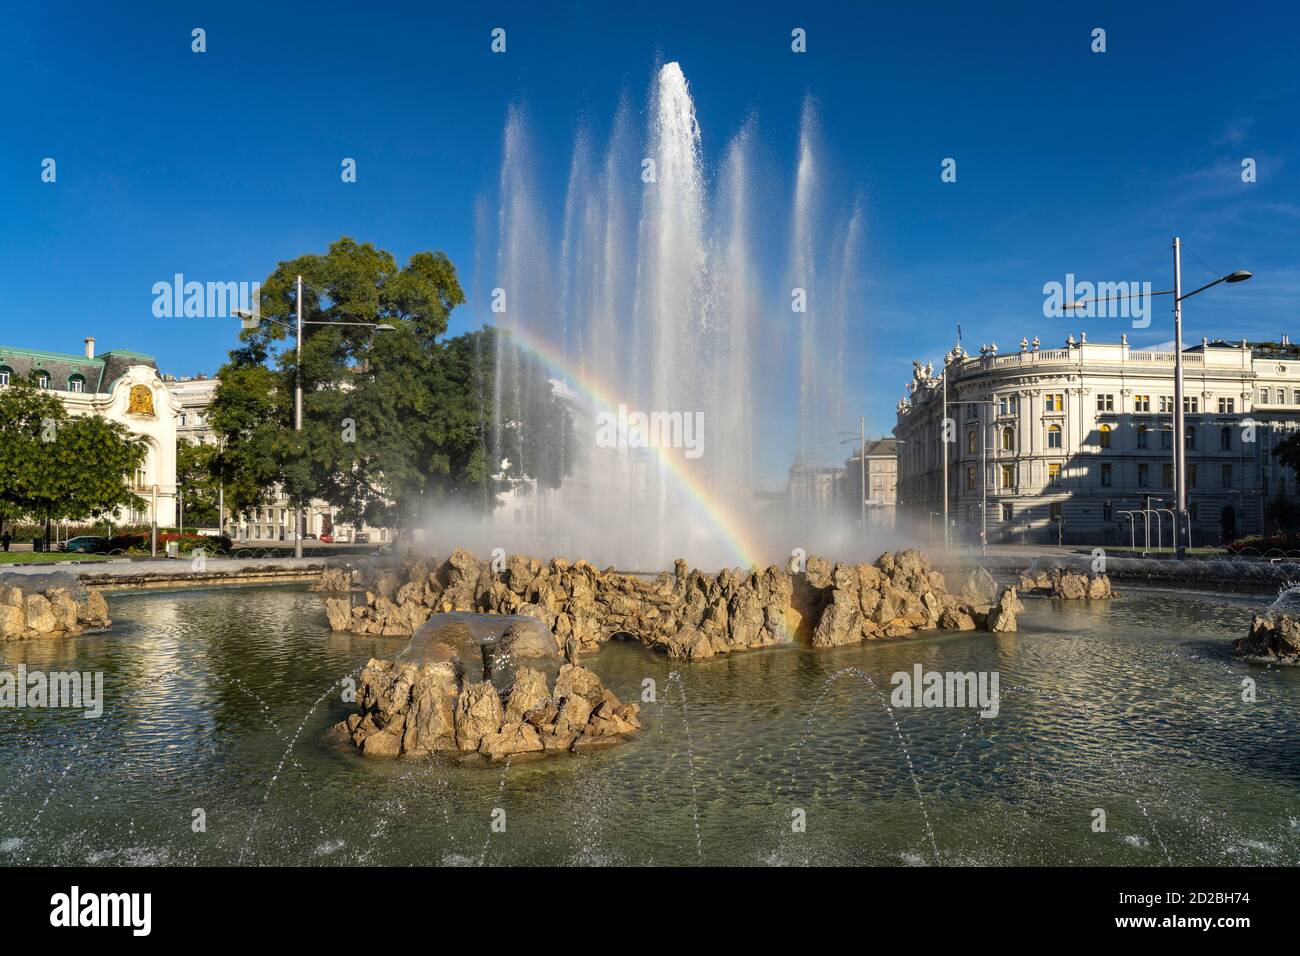 Der Hochstrahlbrunnen am Schwarzenbergplatz à Wien, Österreich, Europa | Fontaine Hochstrahlbrunnen sur la place Schwarzenbergplatz à Vienne, Autriche Banque D'Images